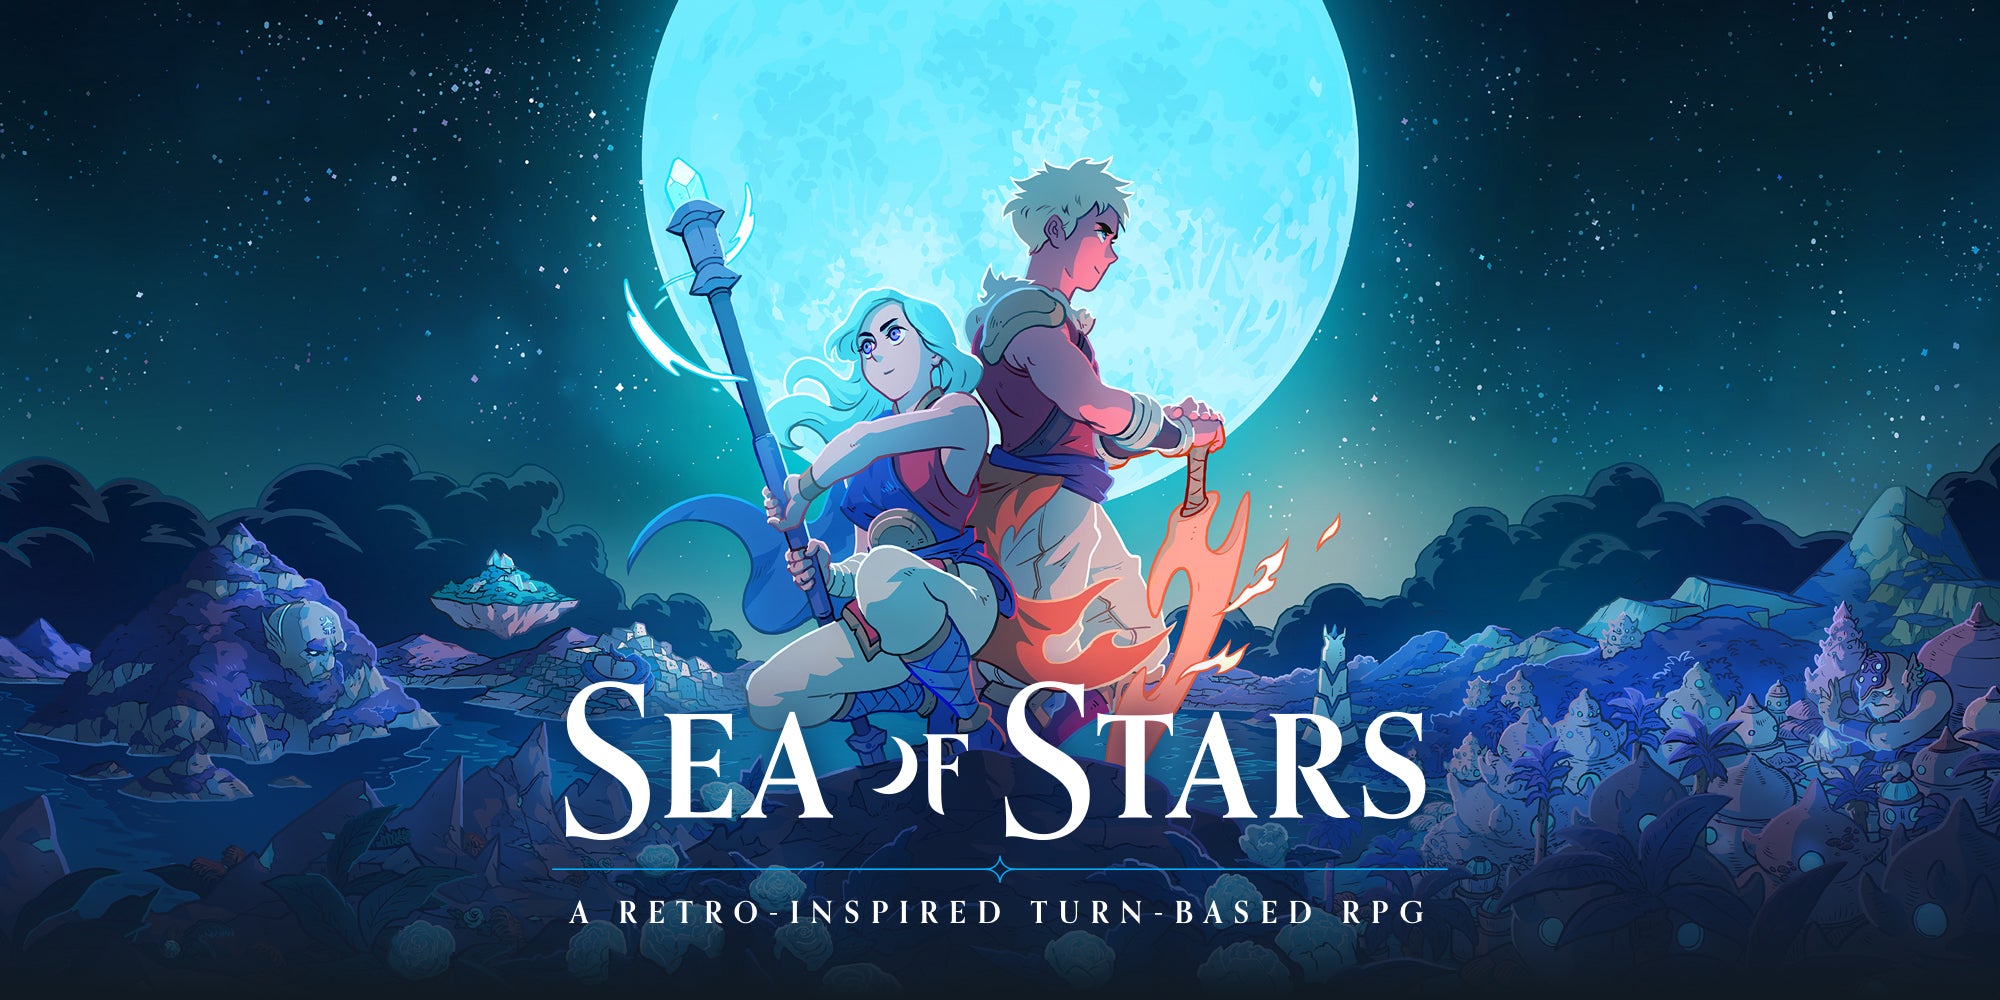 Imagen para Sea of Stars, el RPG de los creadores de The Messenger, se lanzará a finales de agosto